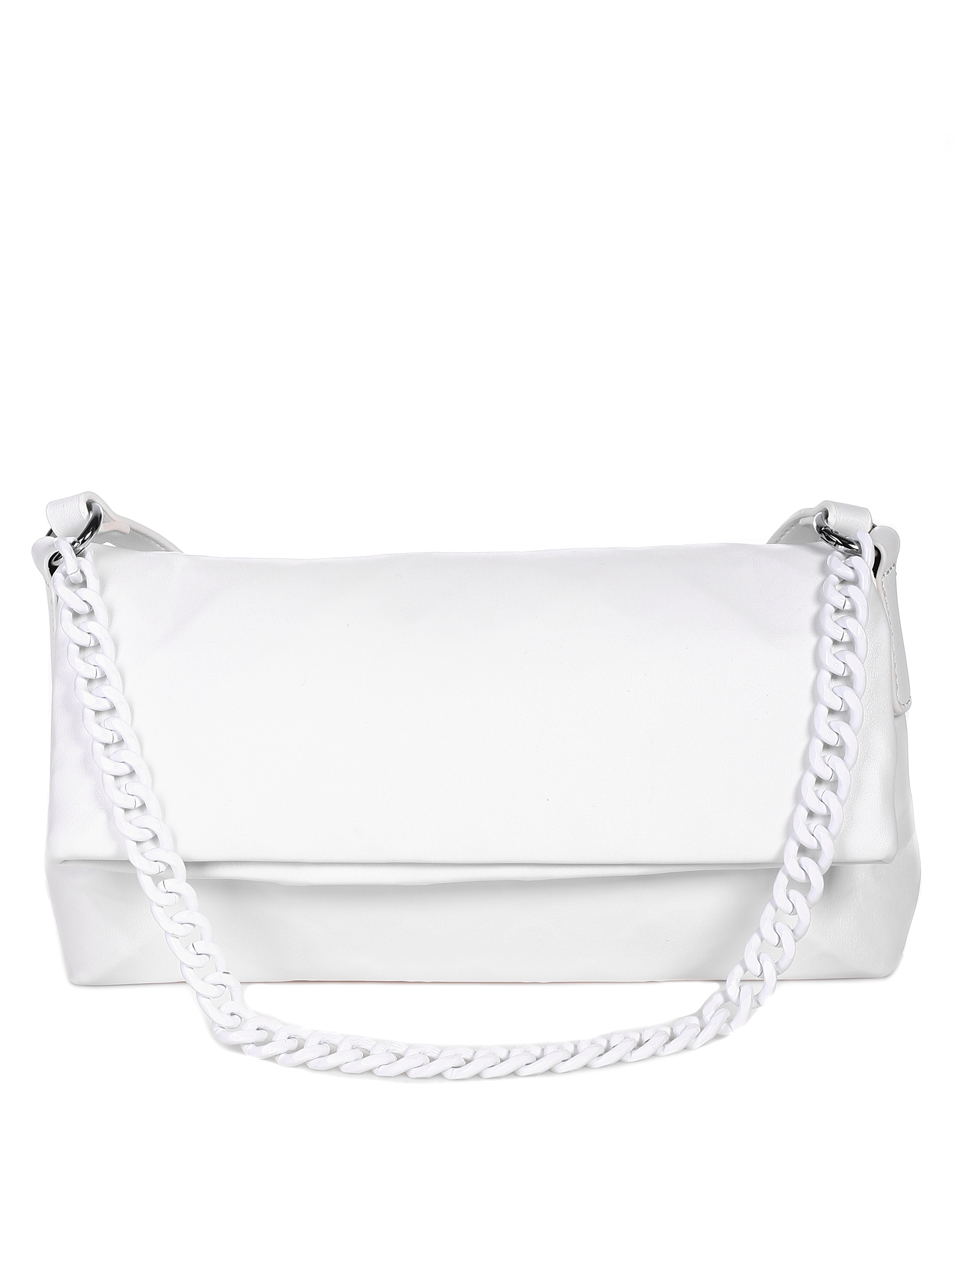 Ежедневна/елегантна дамска чанта в бяло 9Q-22071 white